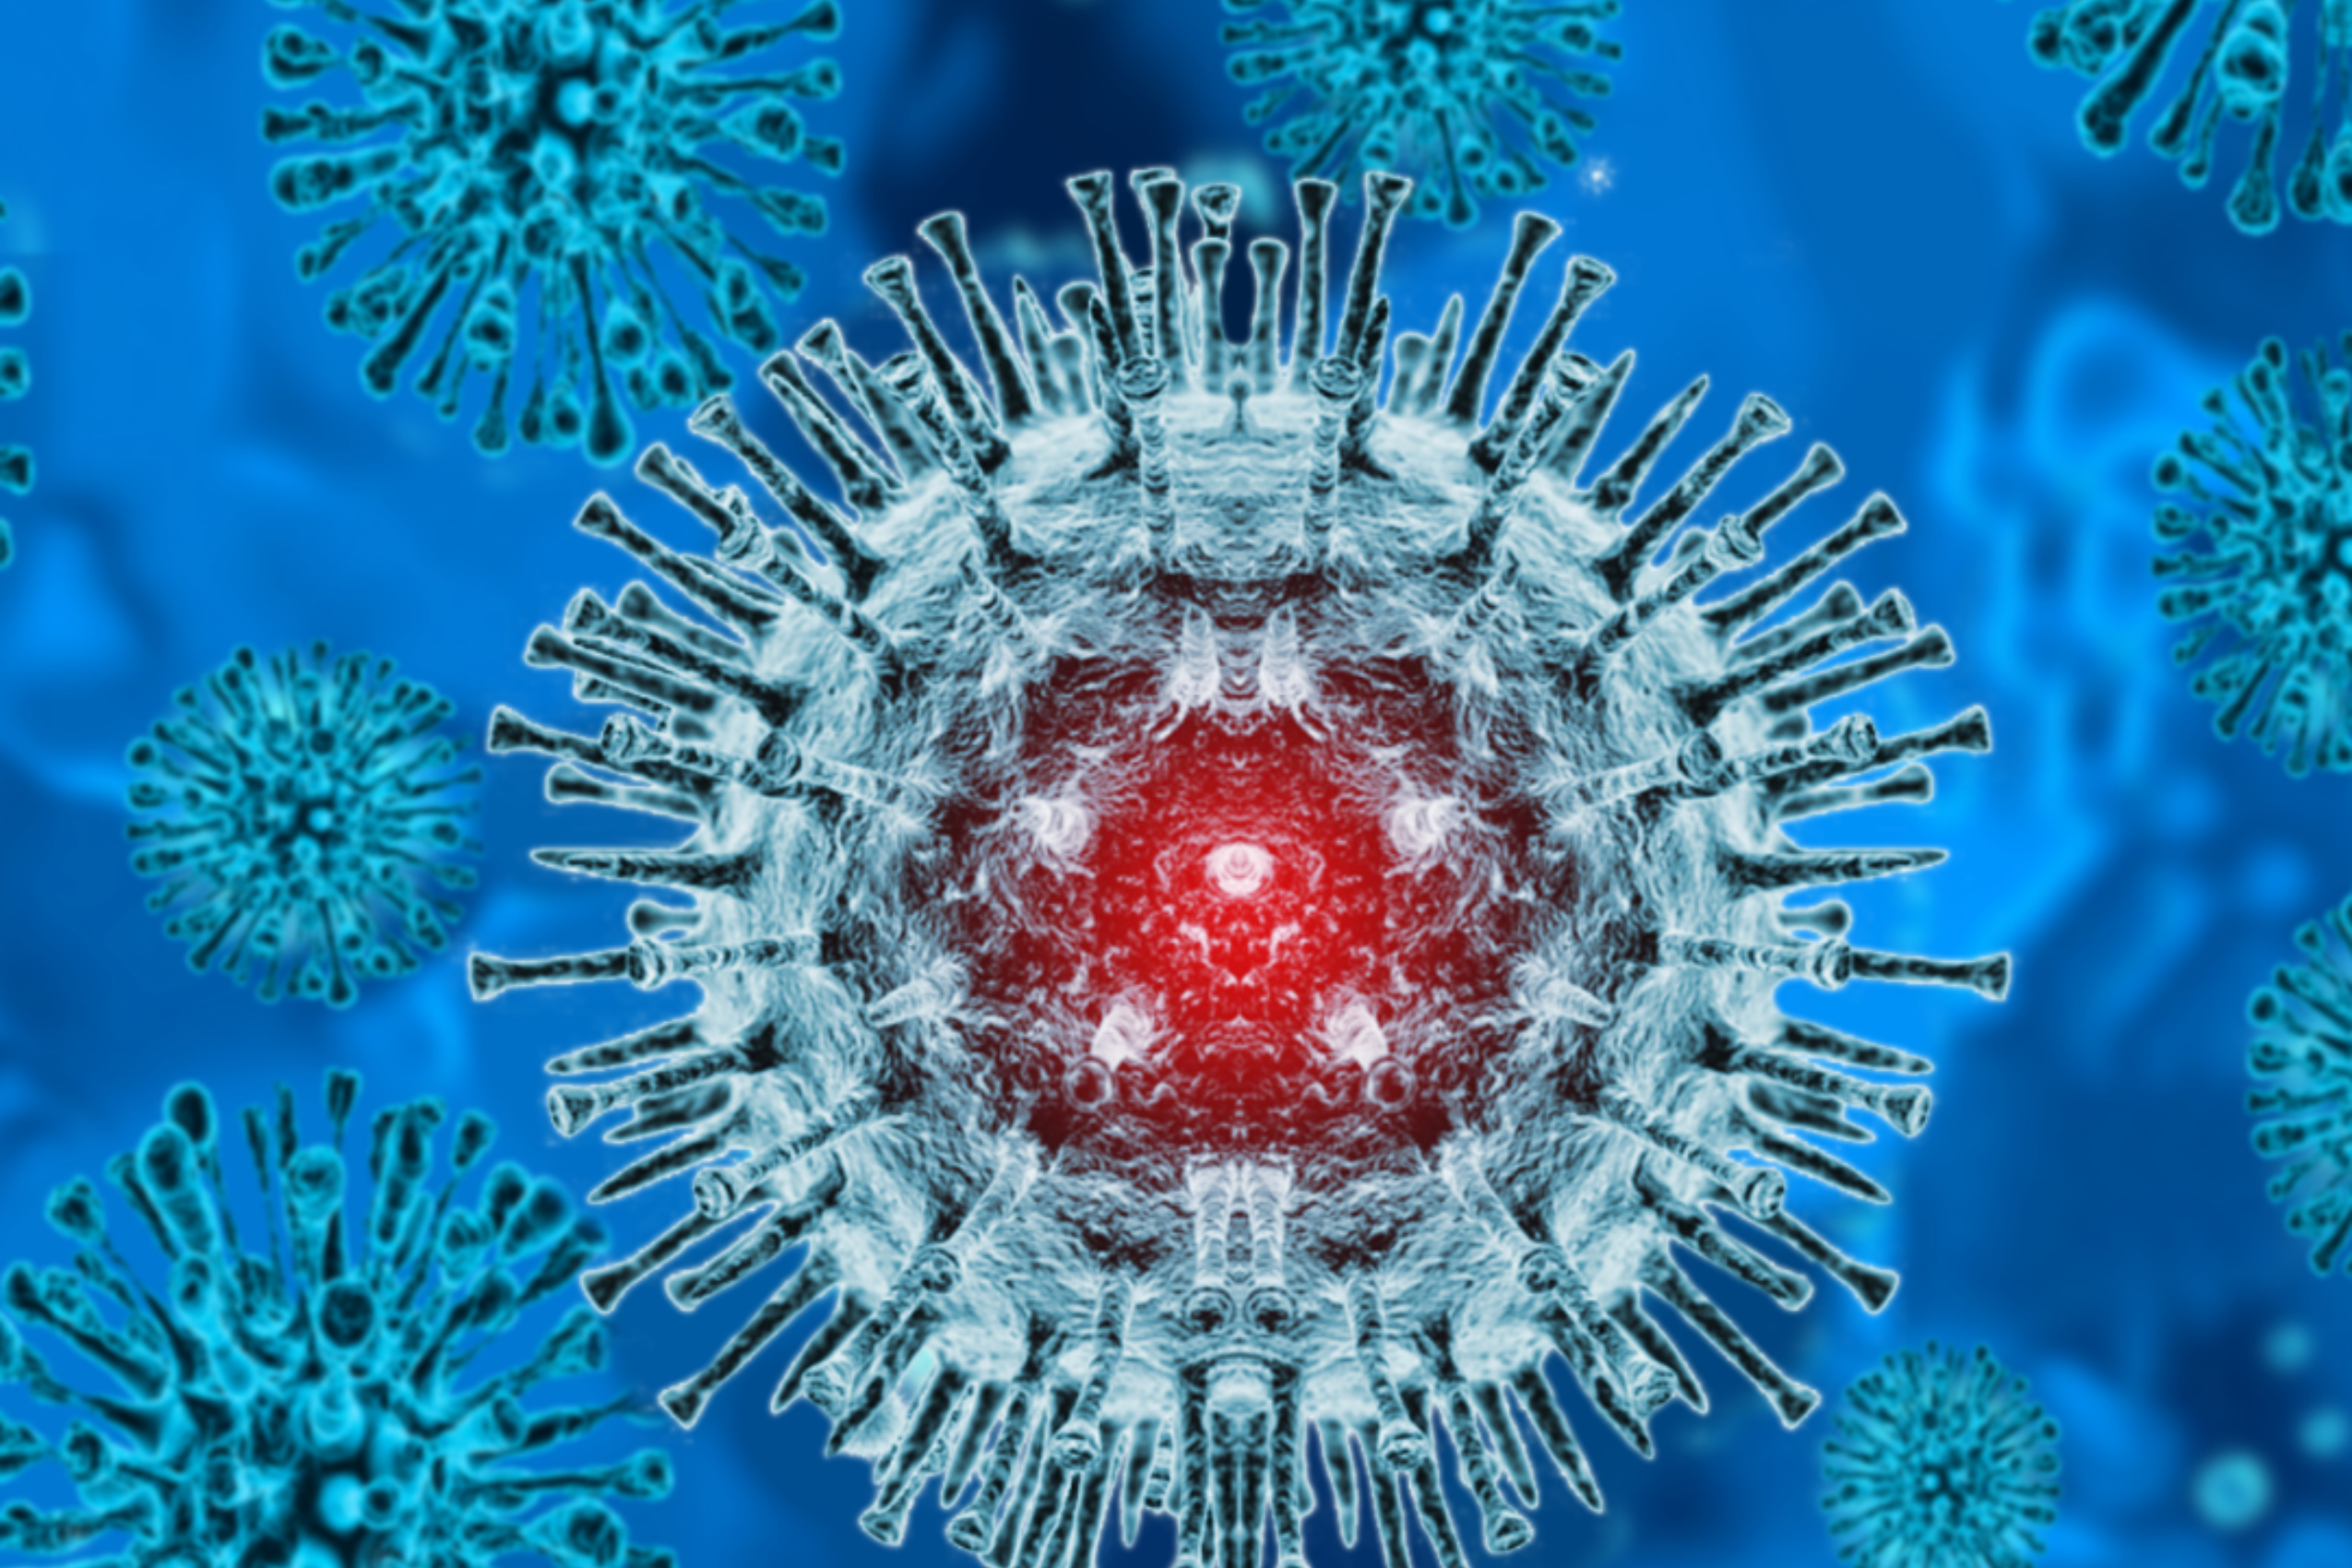 polio virus image blue background